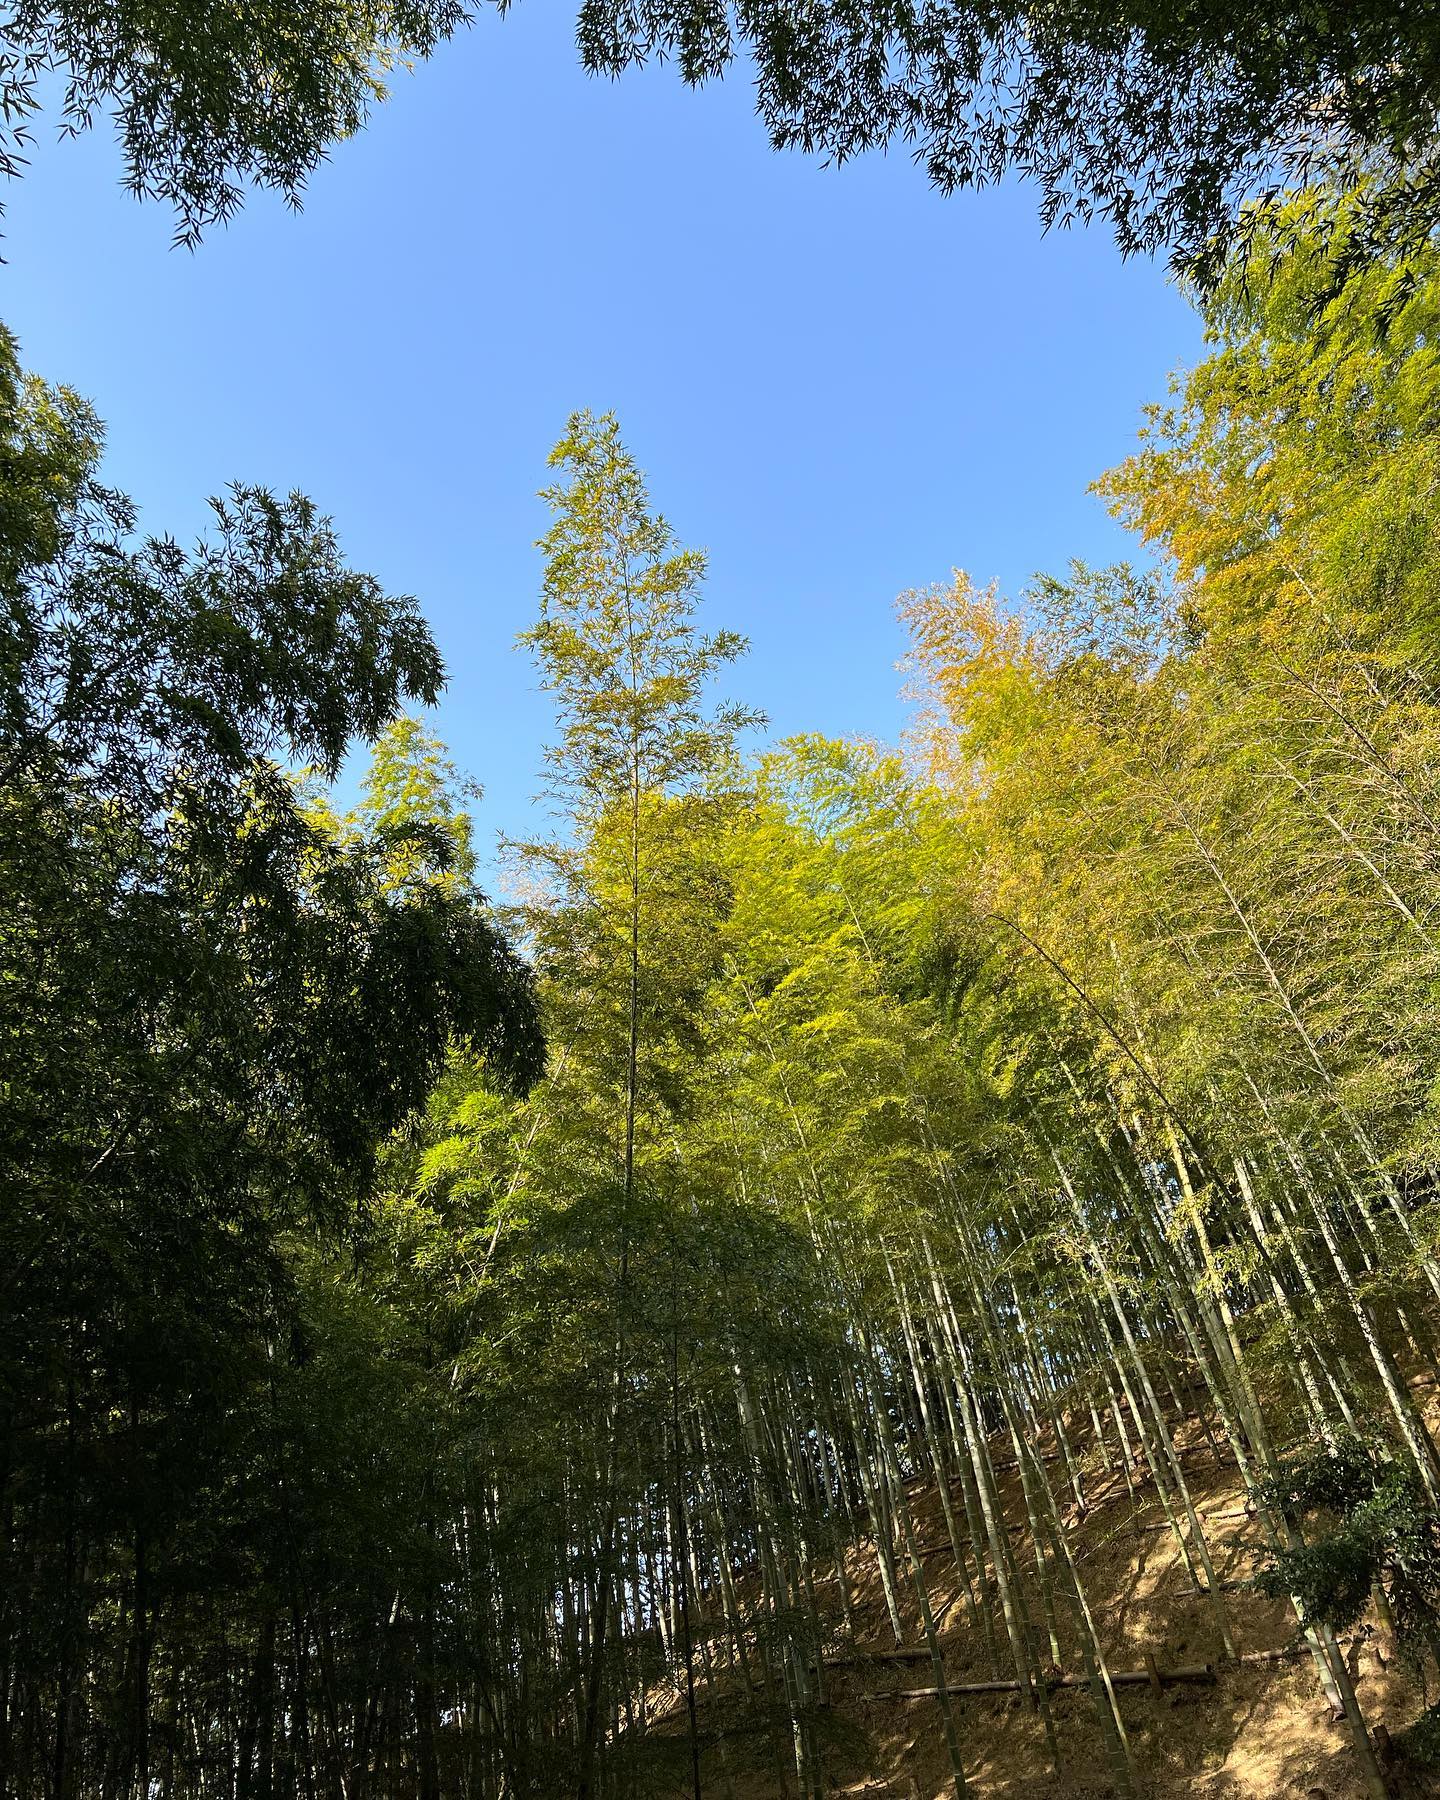 チョー気持ちいー！たけのこ掘りの休憩ポカリがぶ飲みしながらの空、最高#sky #bamboo #nature #spring #forest #空 #竹 #竹林 #自然 #里山 #春 #森林 #林業 #たけのこ #徳島 #阿南 #japan #japanese #自然好きな人と繋がりたい #阿波たけのこ農園 #筍姫 #ポカリ